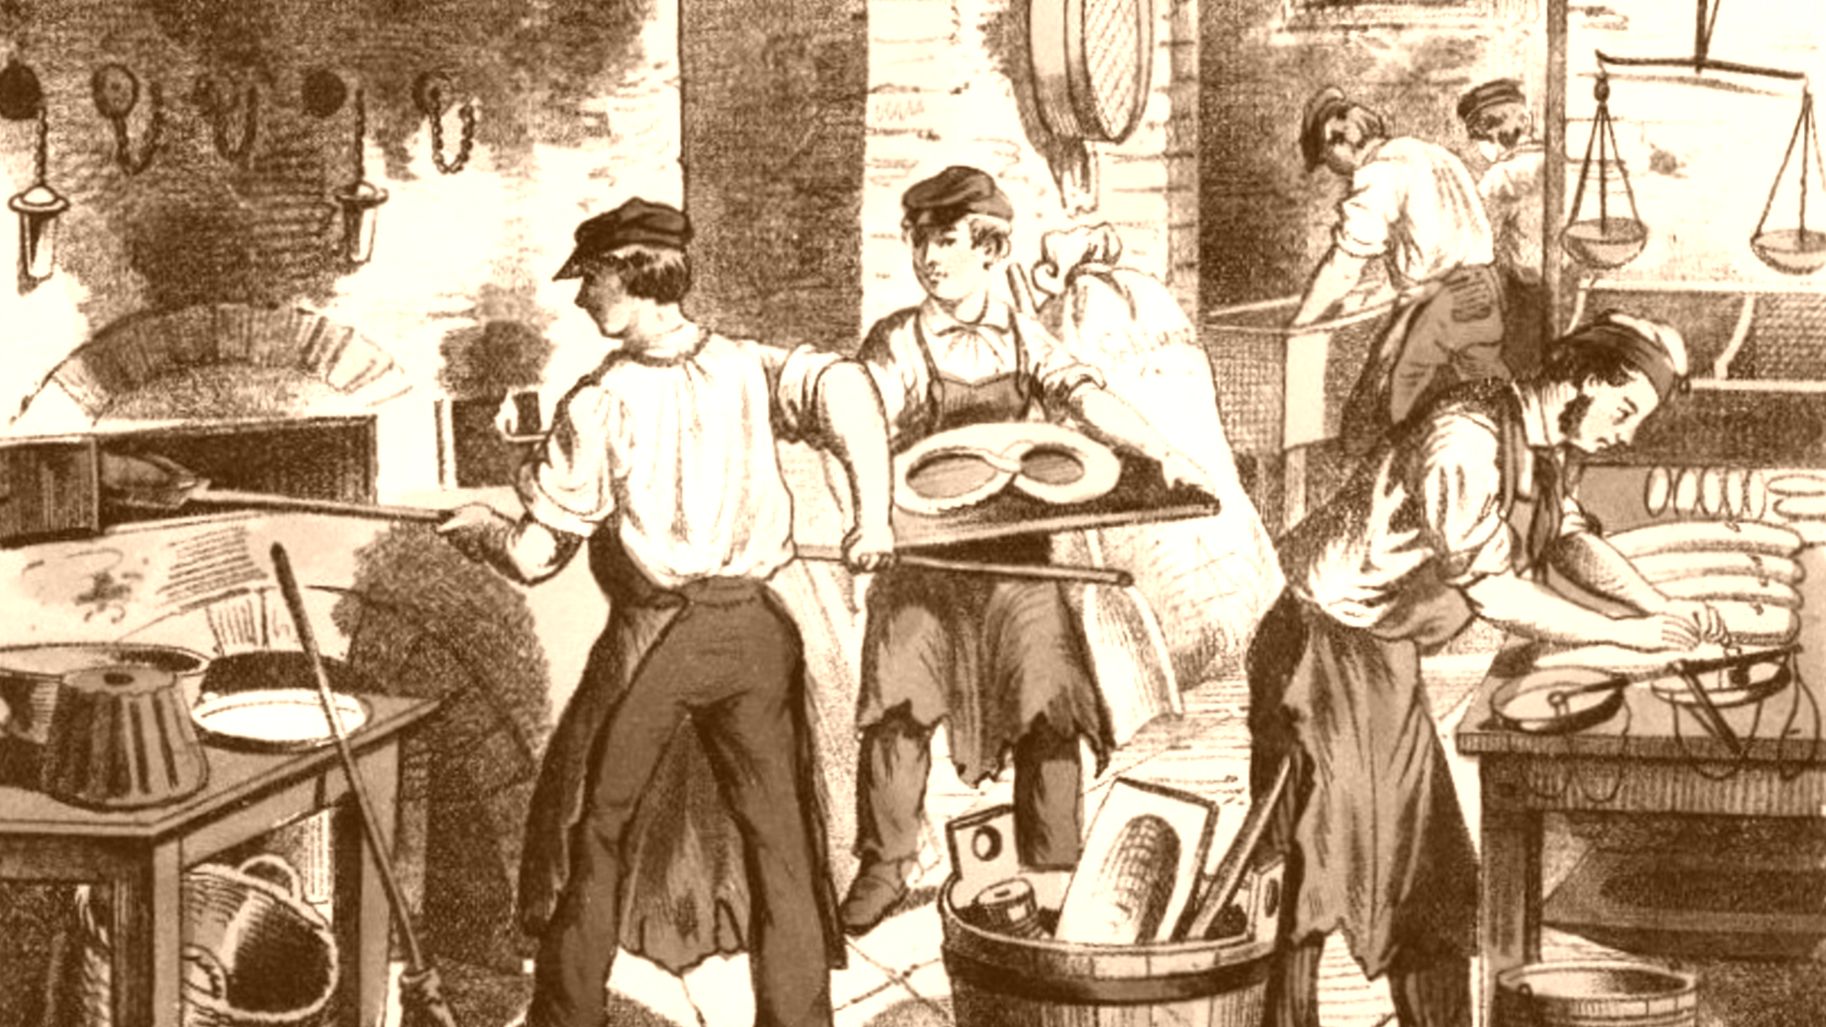 Zeitgenössische Illustration einer Bäckerei